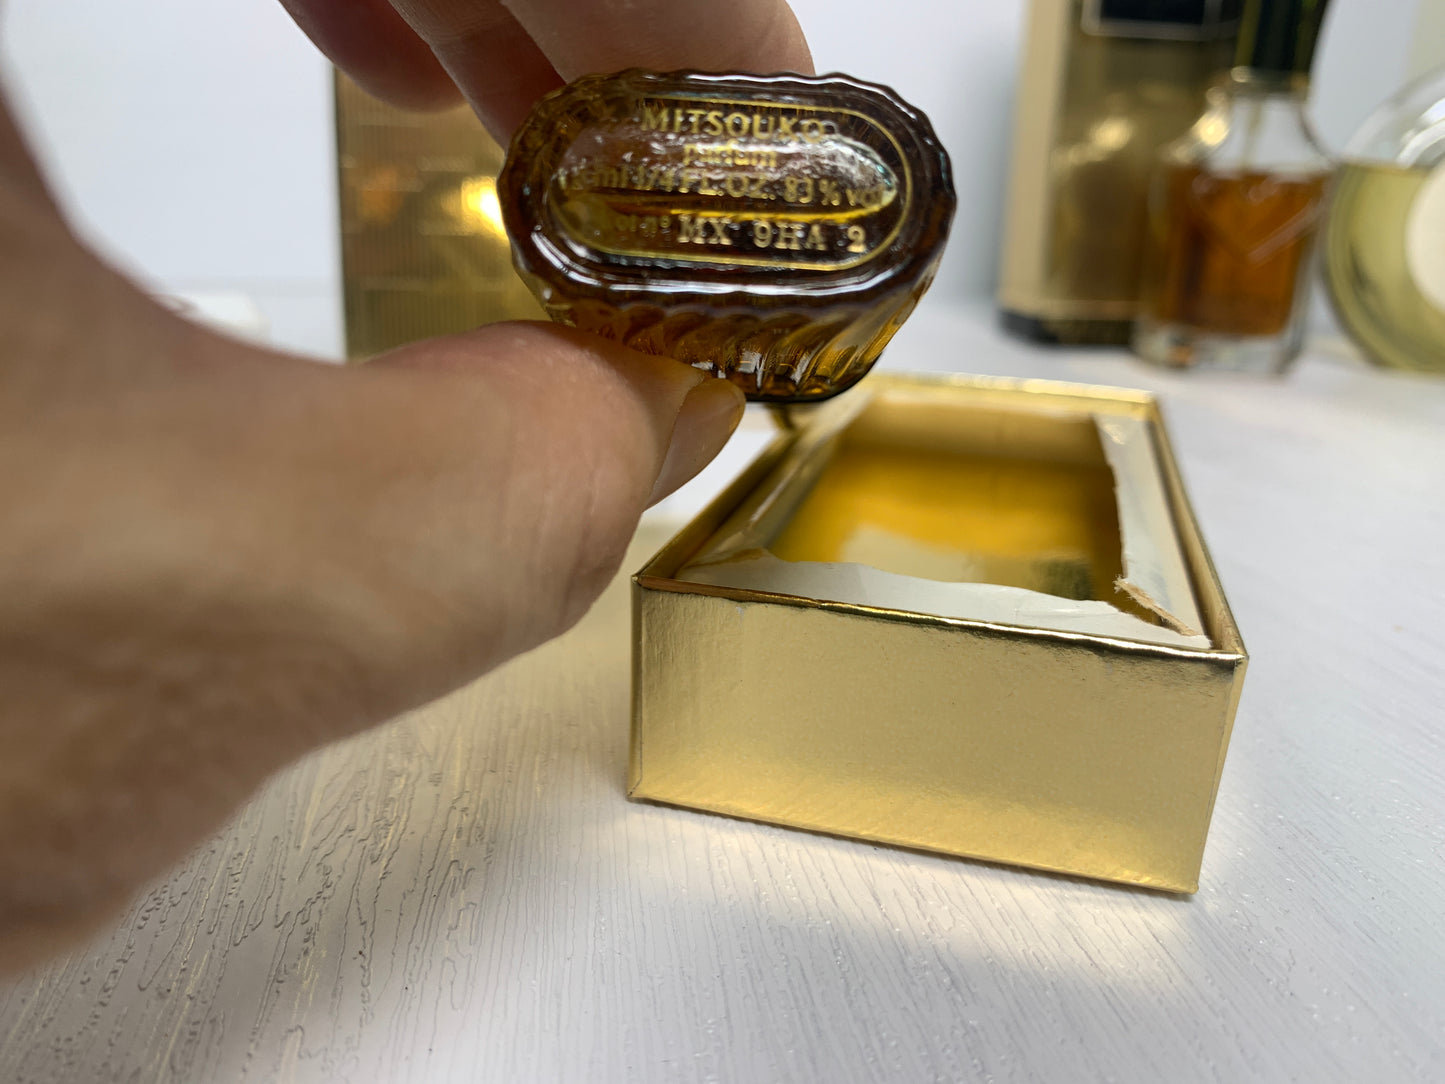 Rare Guerlain Mitsouko 8ml 30ml  100ml perfume - 8NOV